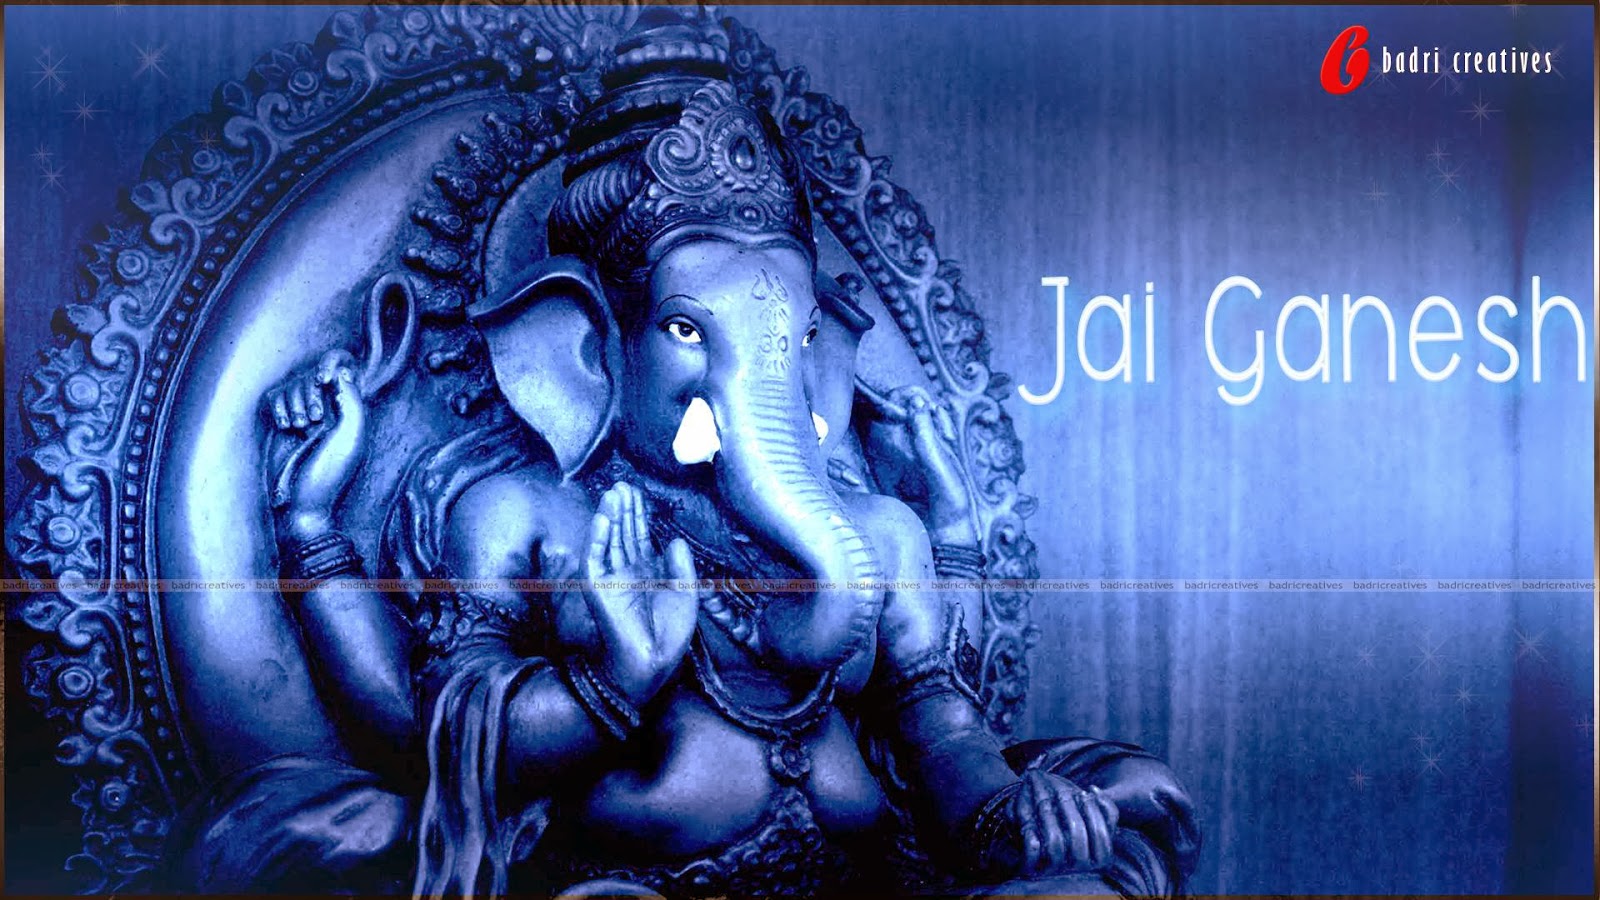 48+] Ganesha Wallpaper HD - WallpaperSafari